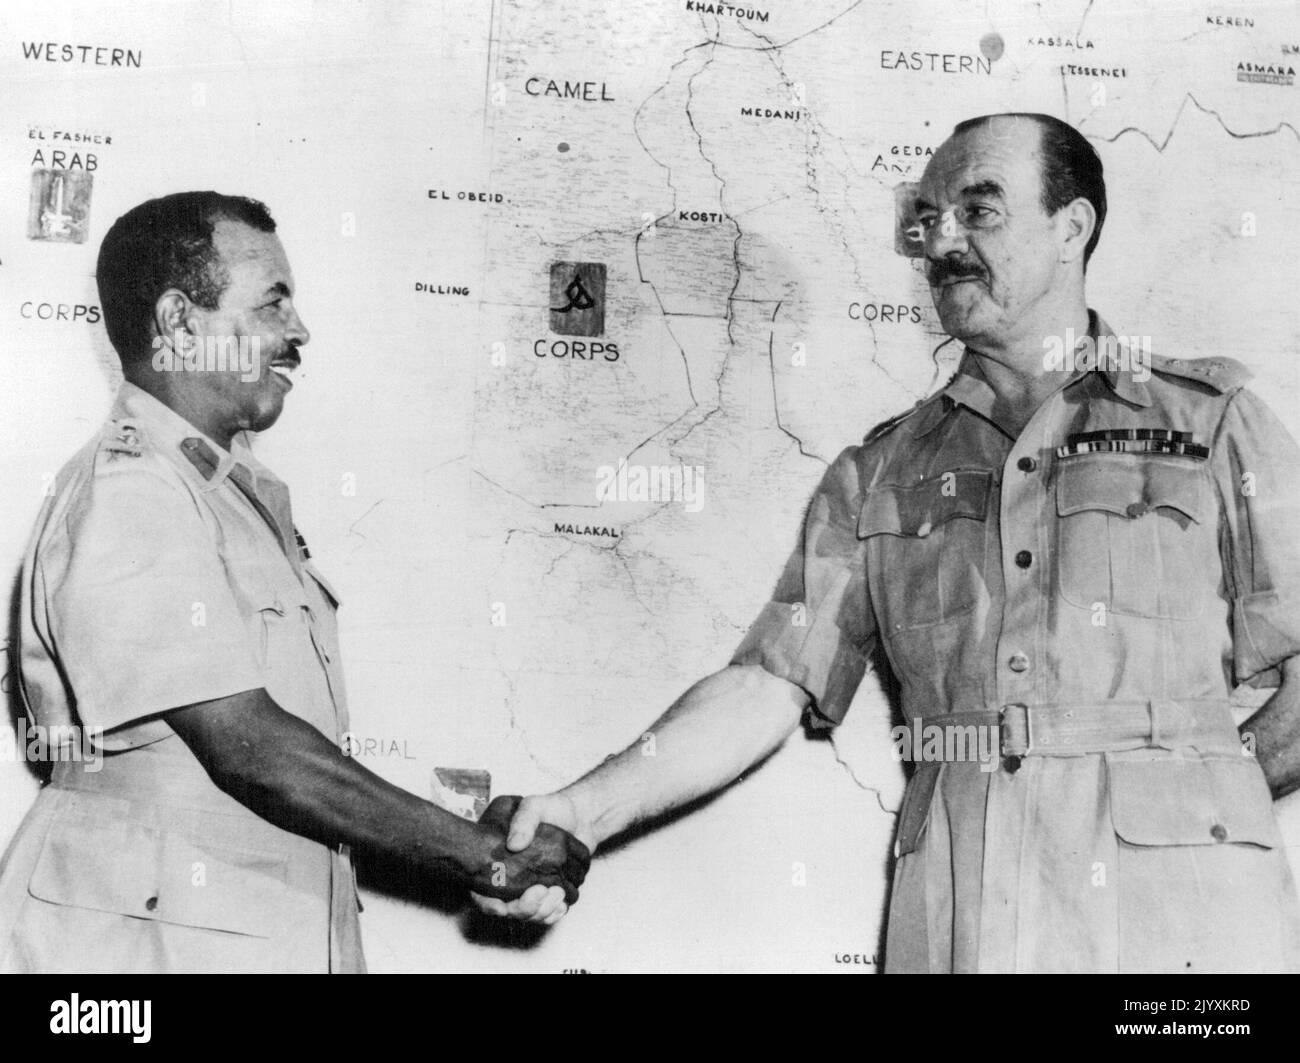 Britischer General fliegt aus dem Sudan -- Major-General R.L. Scoones, C.B., D. S. O., O. B. E., verabschiedet sich von seinem stellvertretenden Kommandanten, Brigadier Ahmed Pasha Mohammed, O. B. E., der das Kommando übernimmt. Die Änderung erfolgt im Rahmen der Politik der "Sudanisierung" der militärischen Kontrolle im Sudan. General Scoones flog mit dem Flugzeug der RAF vom Flughafen Khartum nach Großbritannien zurück. Im Hintergrund ist eine Karte mit dem Provinzhauptquartier des Sudan Defence Force Corps zu sehen. 17. August 1954. (Foto von United Press Photo). Stockfoto